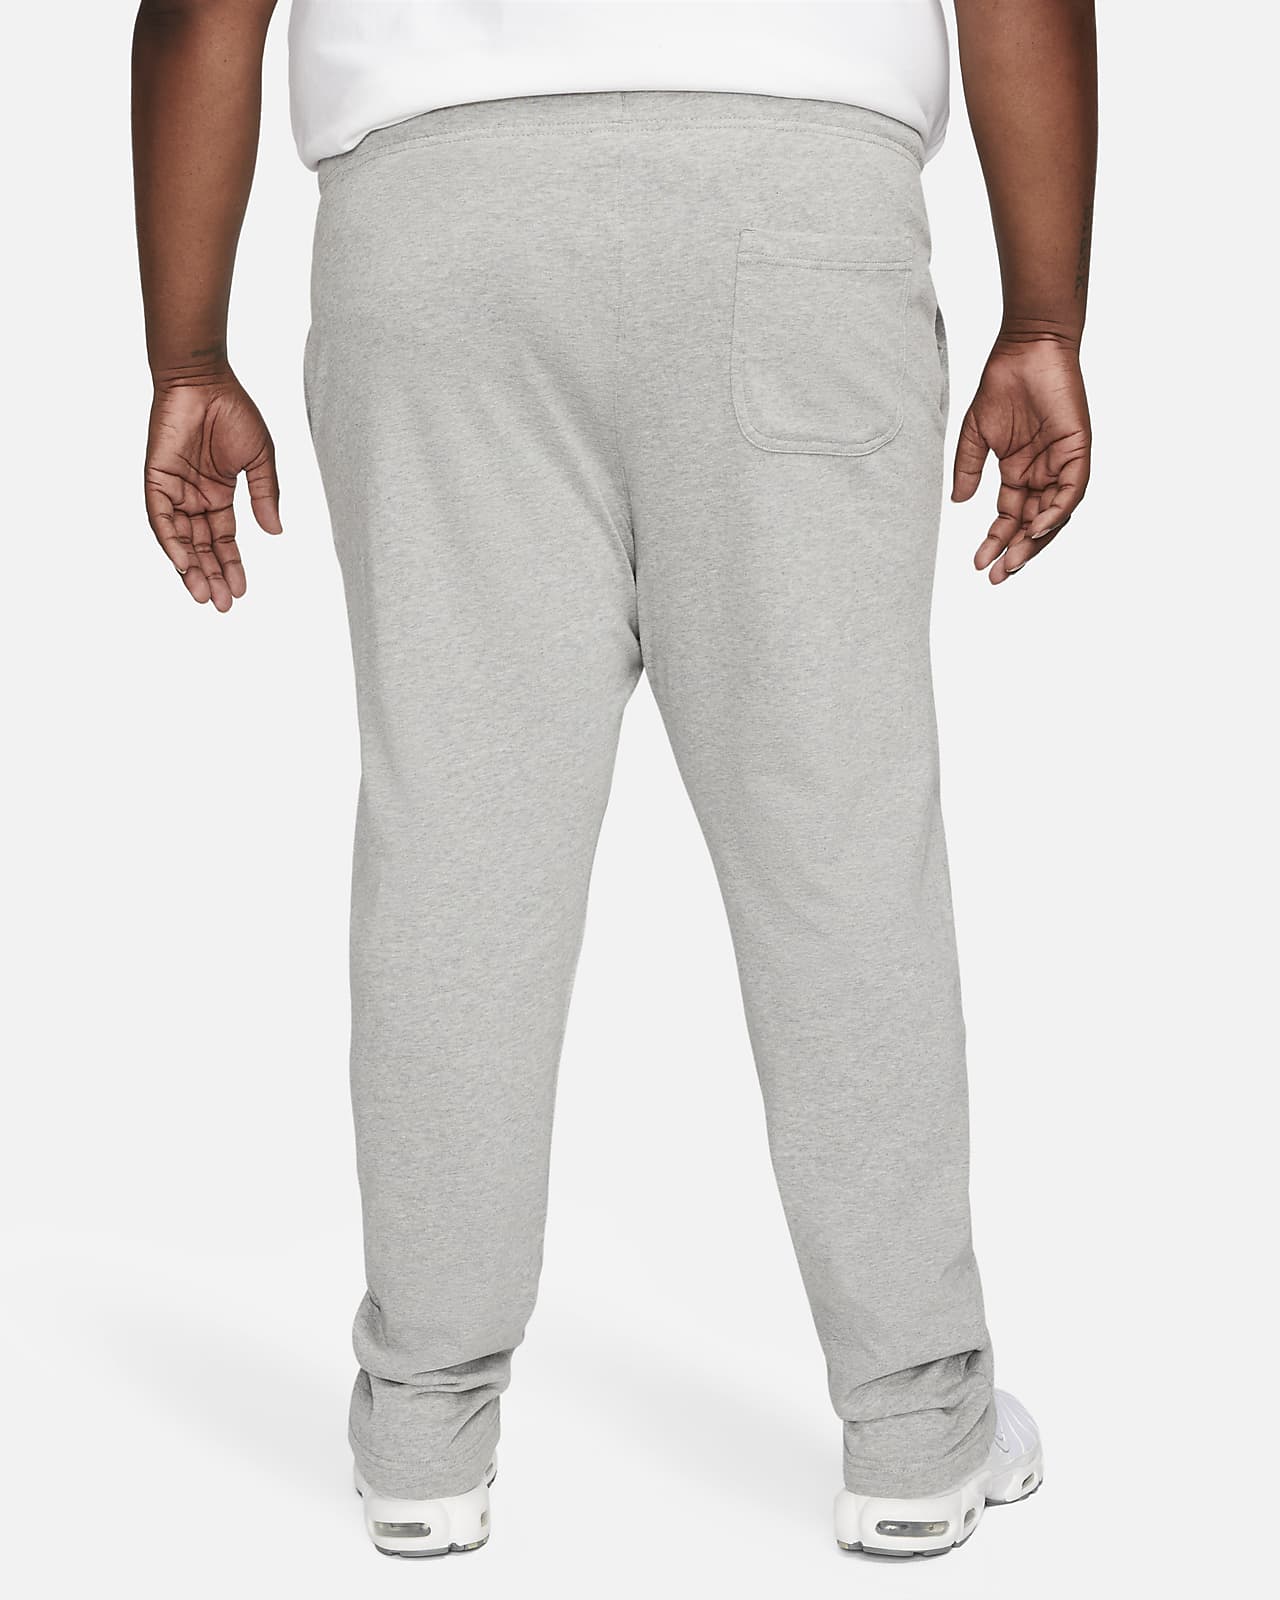 Nike Sportswear Club Fleece Men's Jersey Pants.